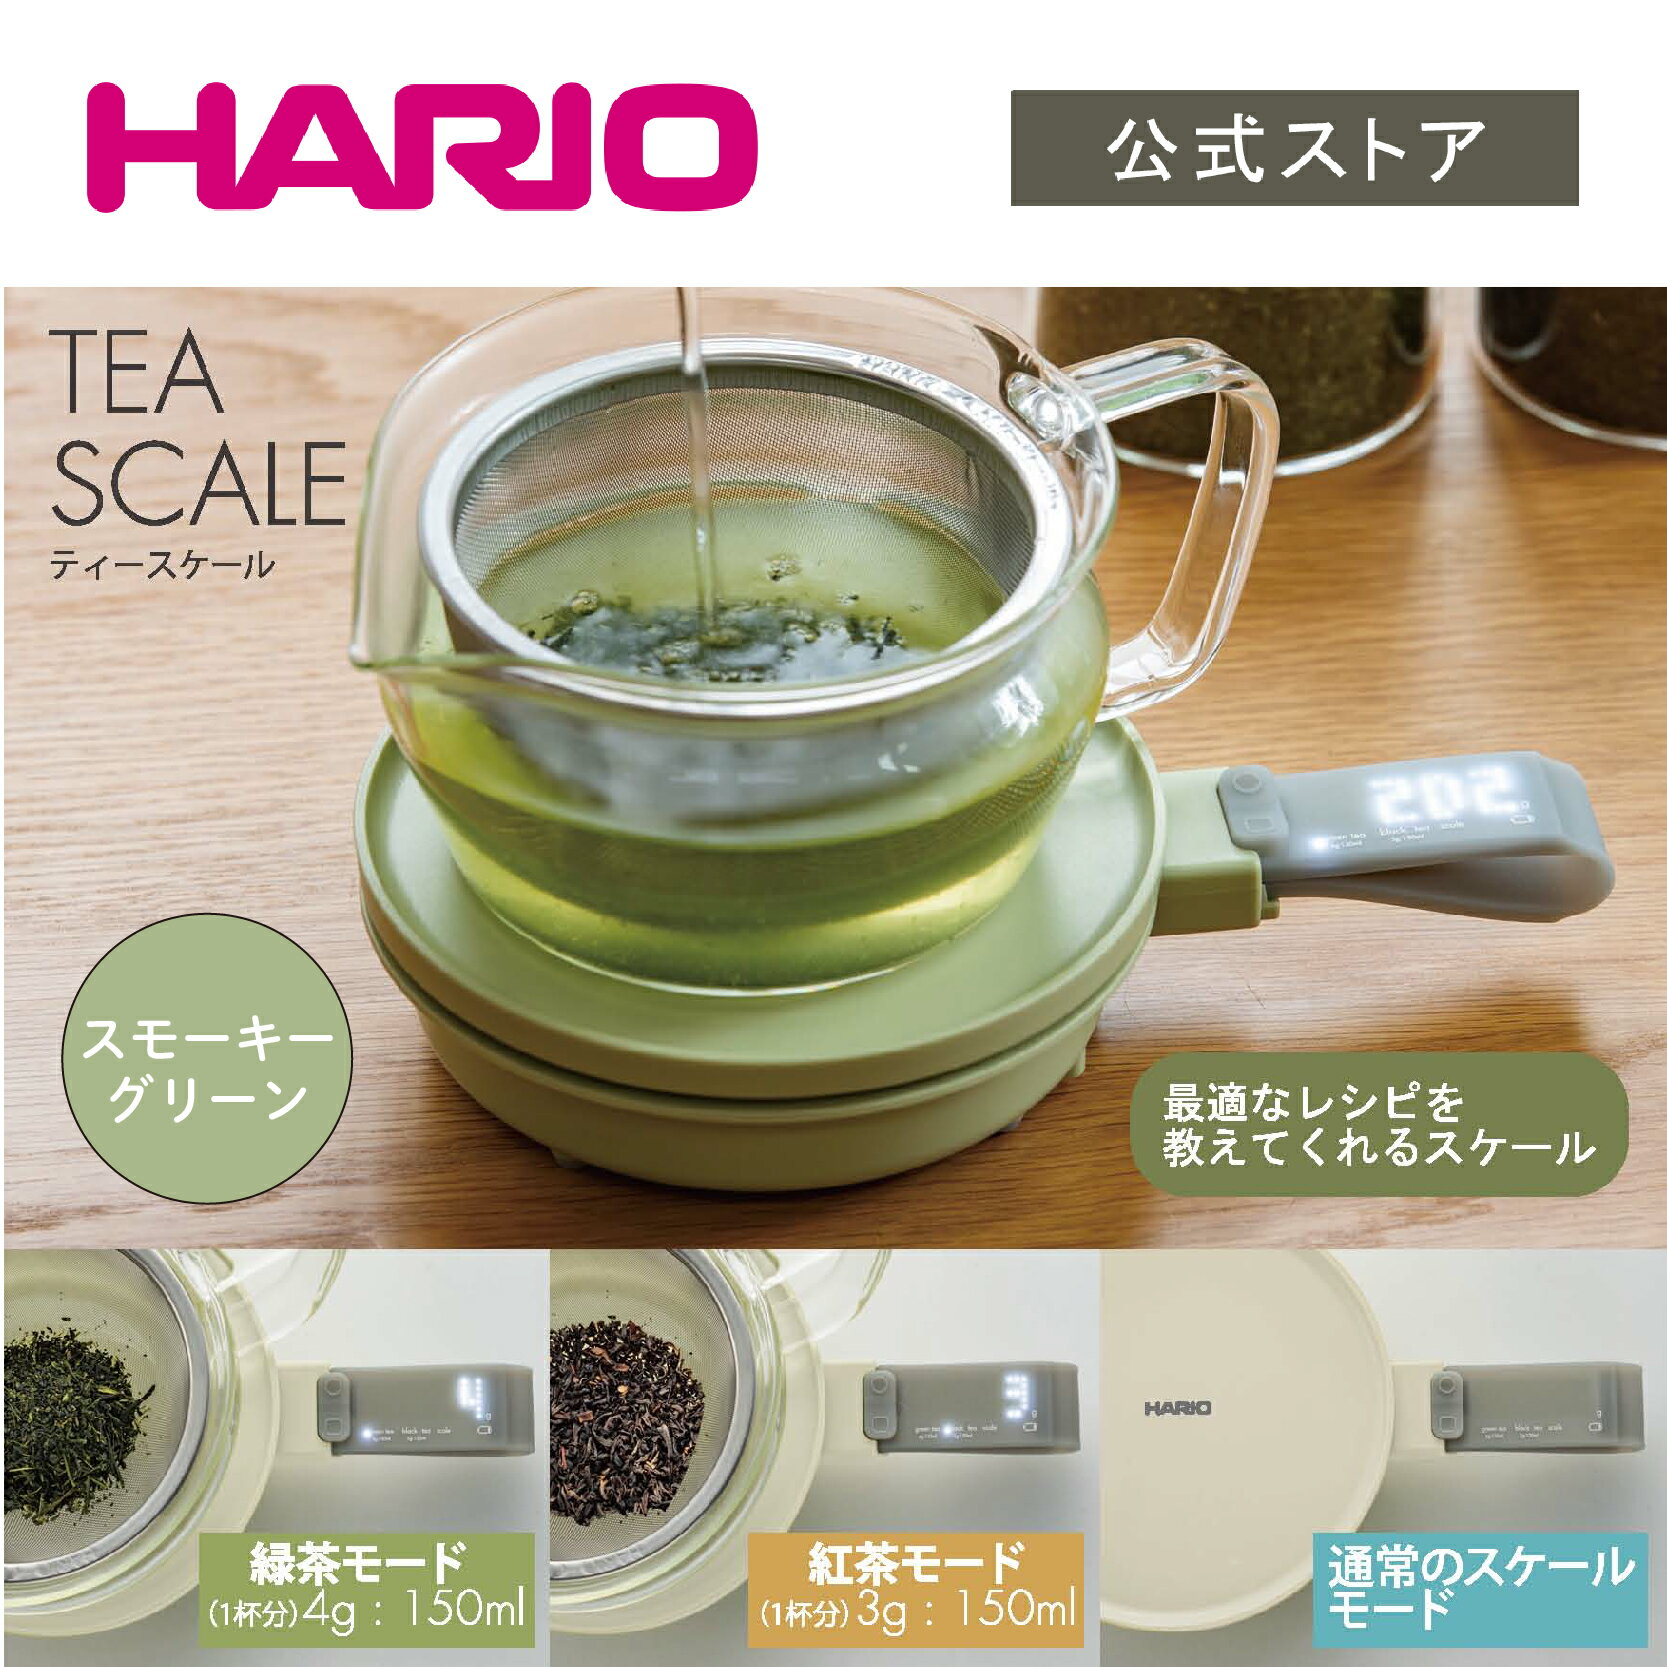 【公式ショップ】HARIO ティースケール　ハリオ クッキングスケール はかり 量り 全2色 オフホワイト スモーキーグリーン デジタル表示 乾電池式 緑茶 紅茶 スケール コンパクト お茶 ティータイム 白 緑 かわいい